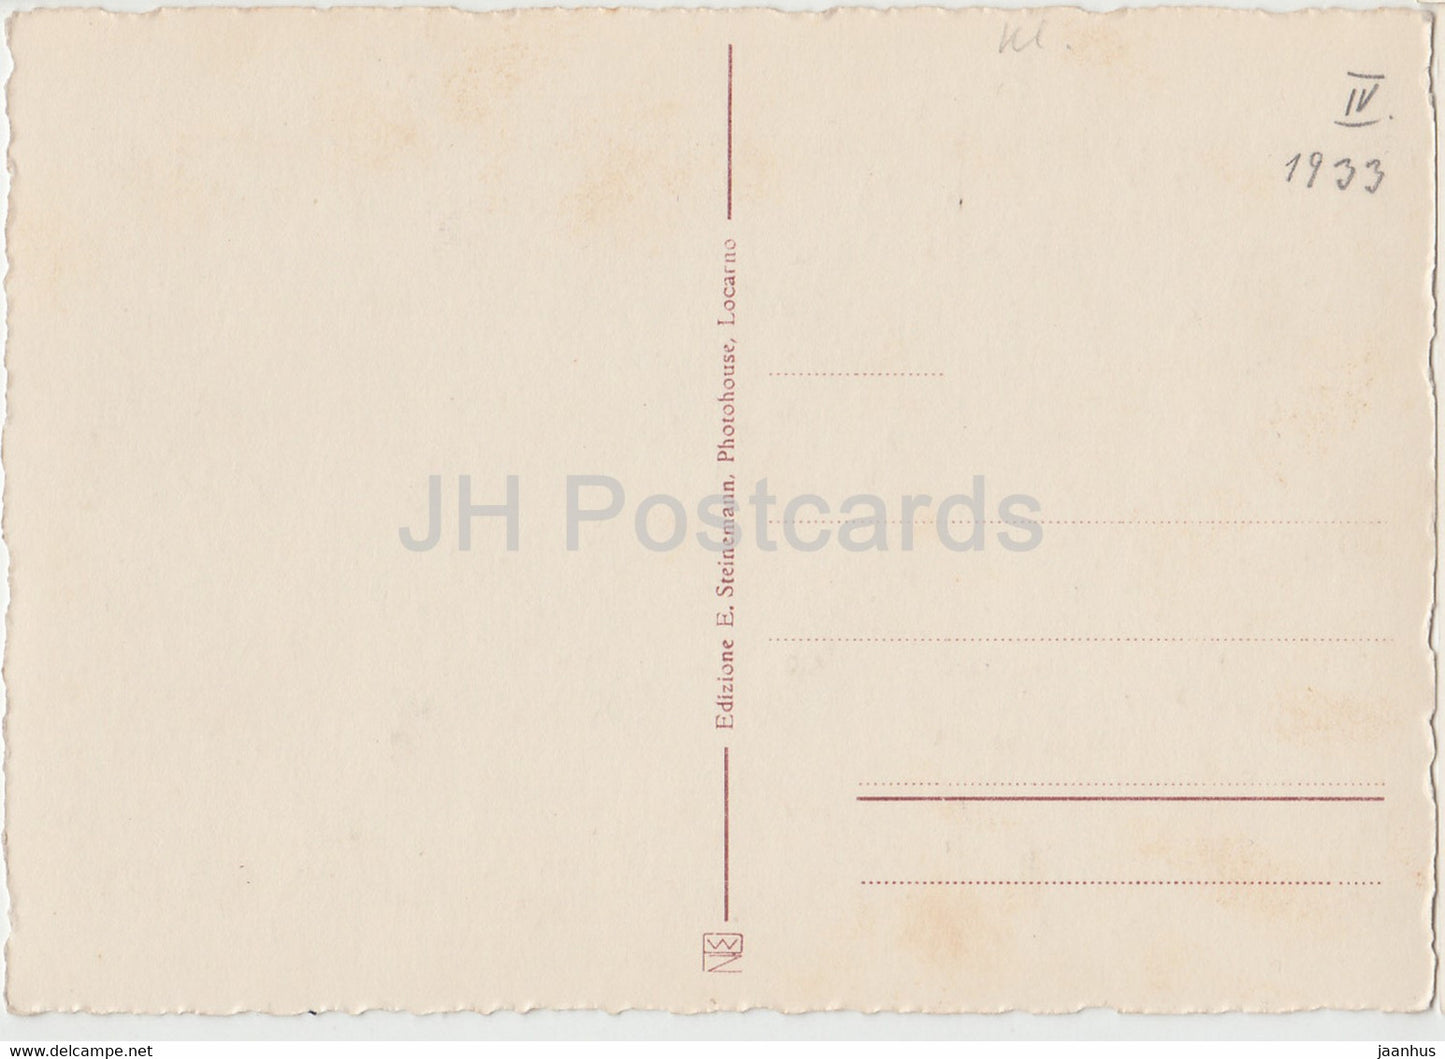 Locarno - Magnolie - 7159 - alte Postkarte - 1933 - Schweiz - unbenutzt